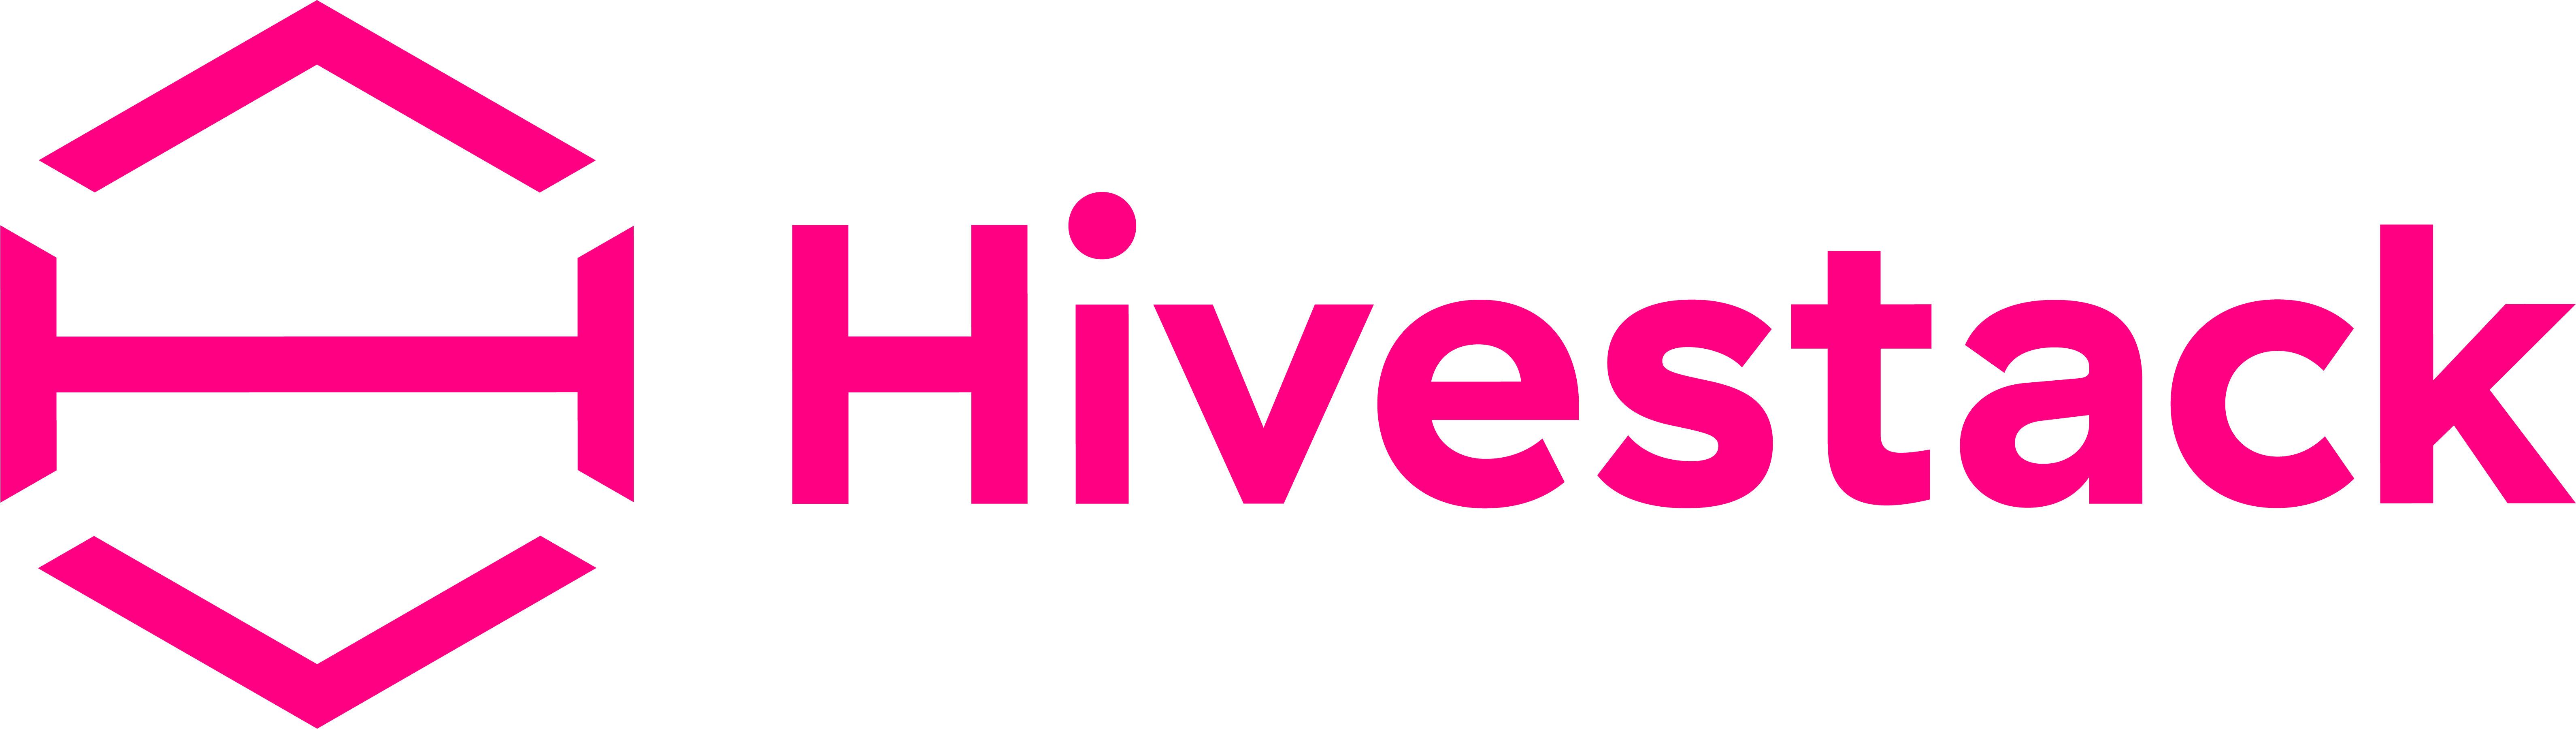 Hivestack_logo_ENG-05